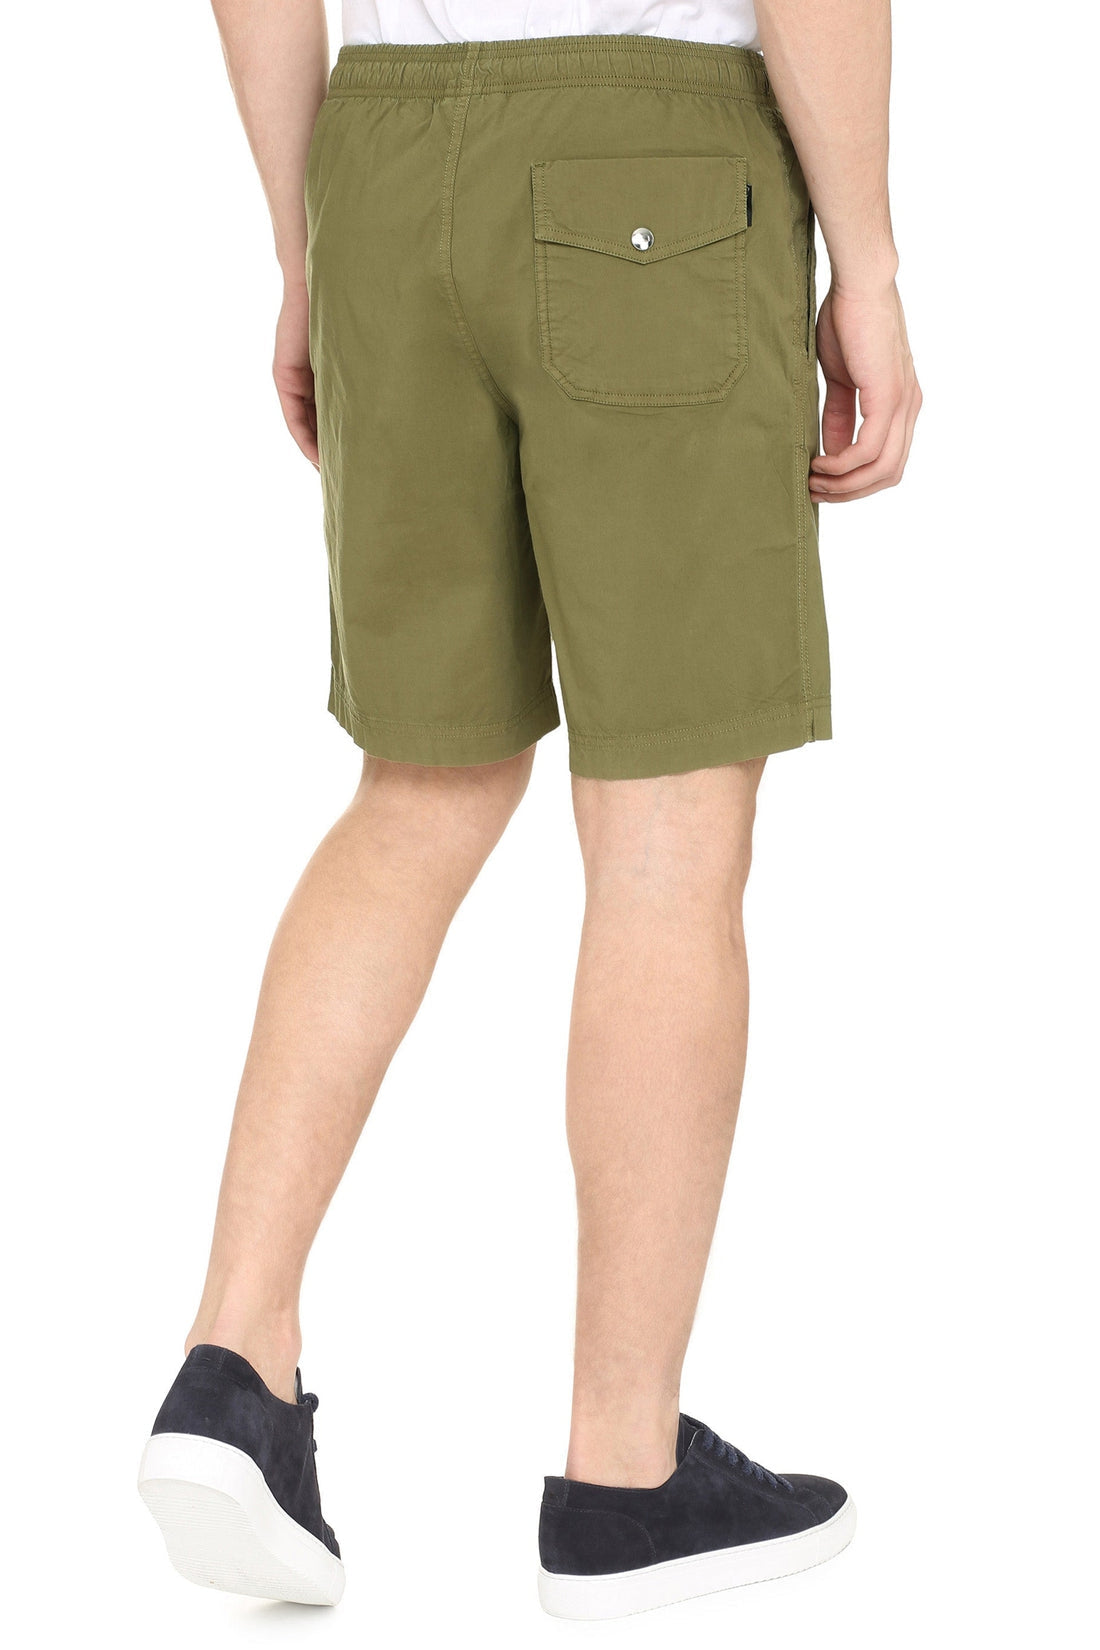 Woolrich-OUTLET-SALE-Cotton bermuda shorts-ARCHIVIST